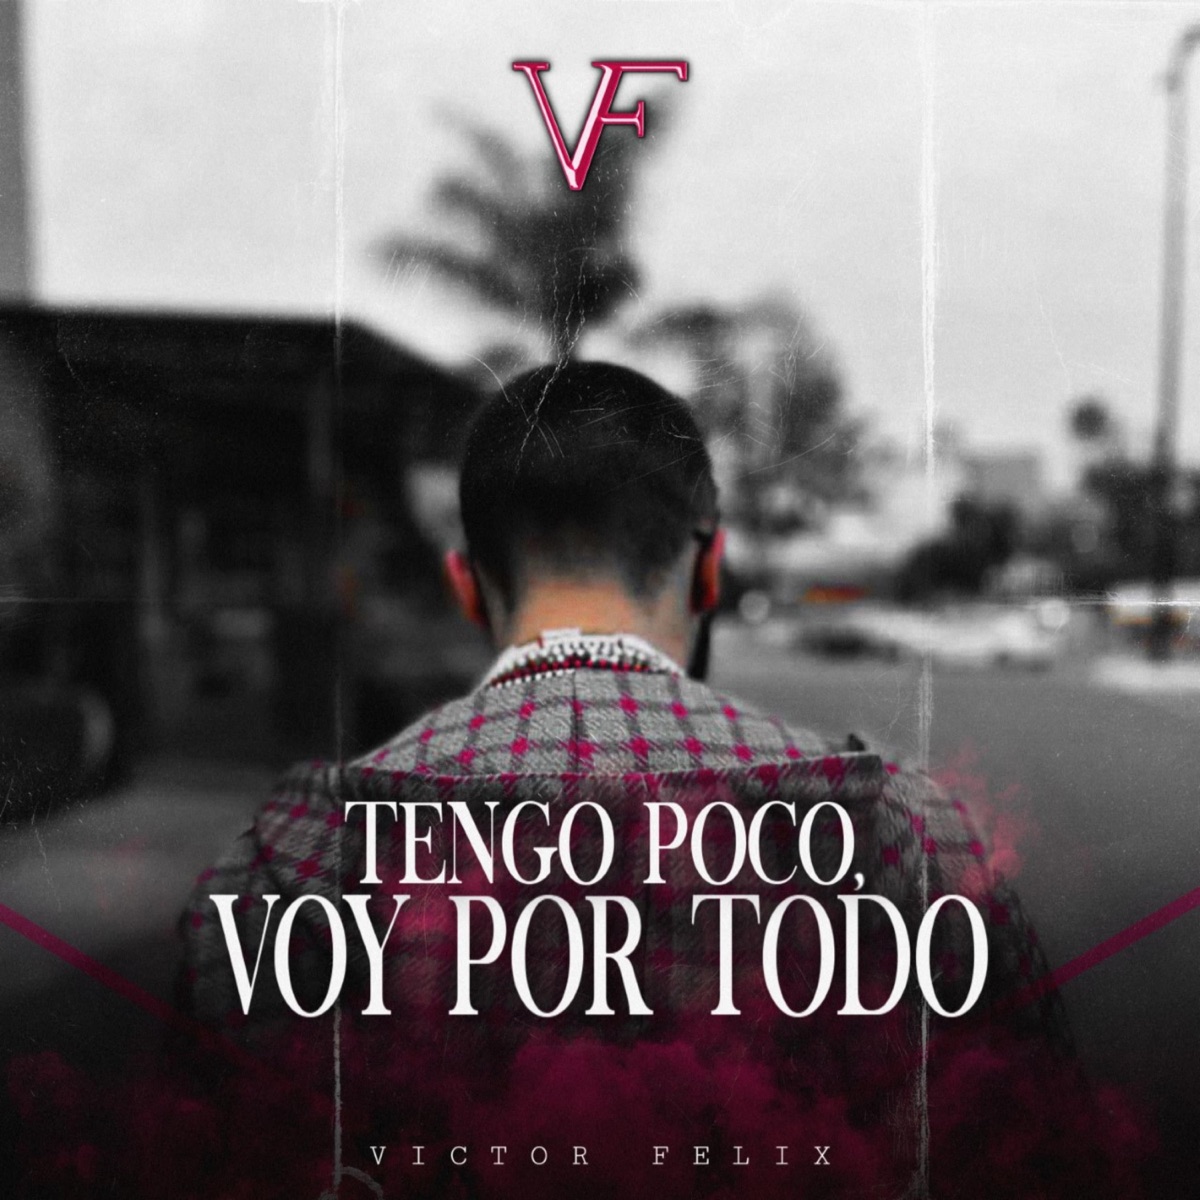 Tengo Poco, Voy por Todo - Single - Album by Victor Felix - Apple Music